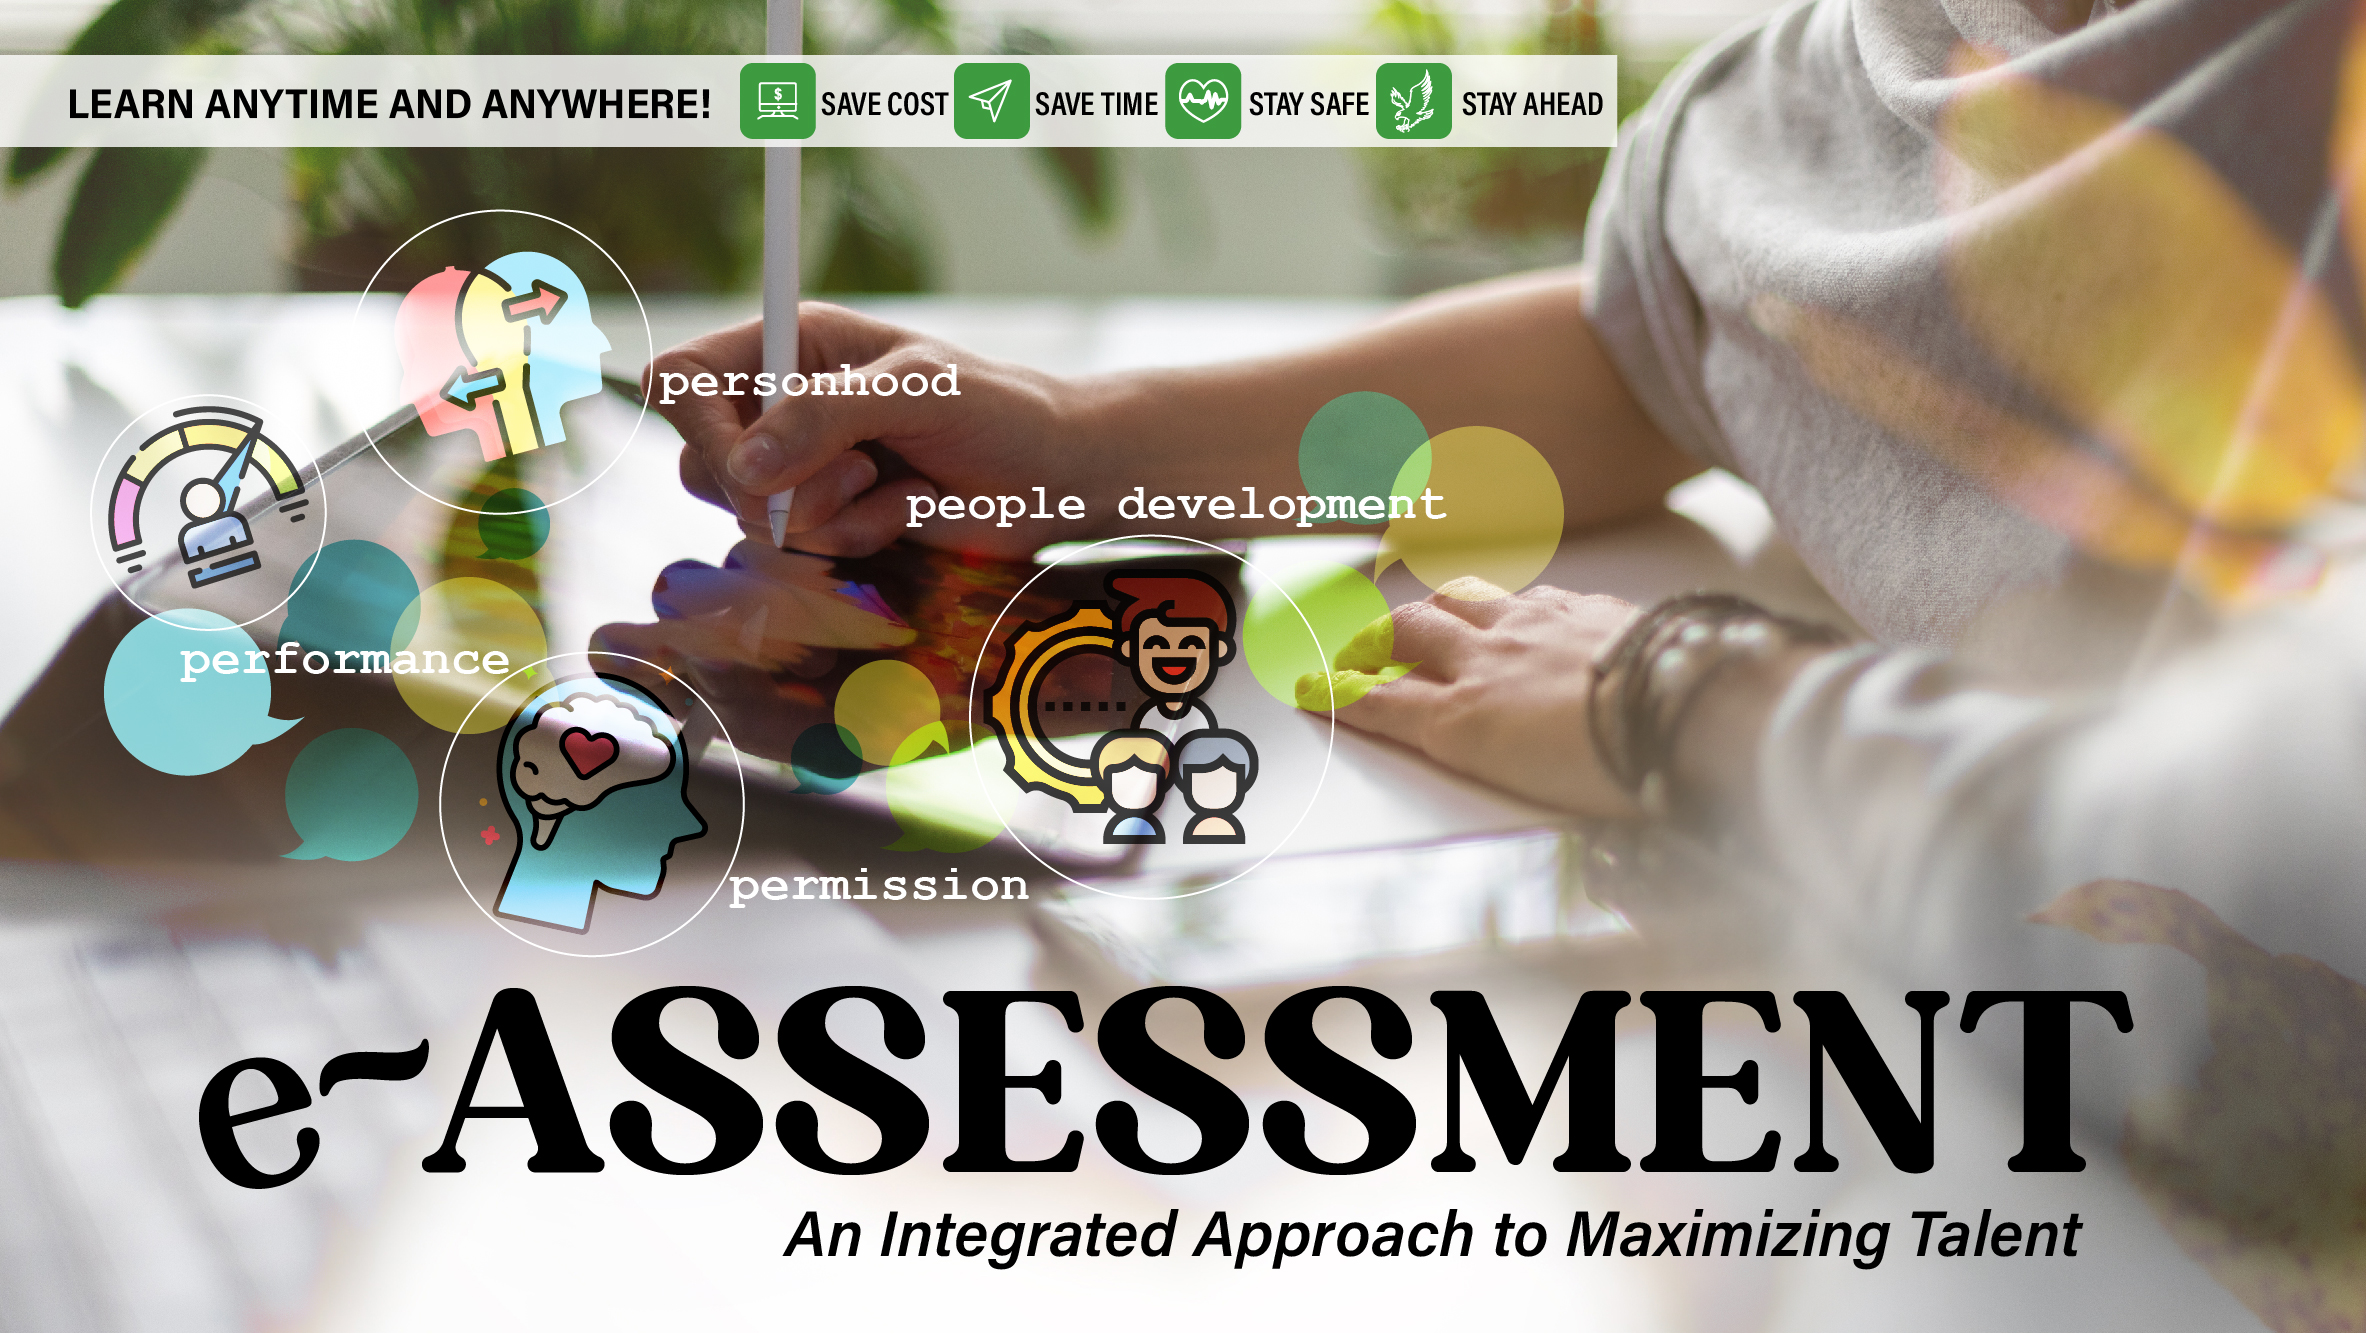 ITD World's e-Assessment